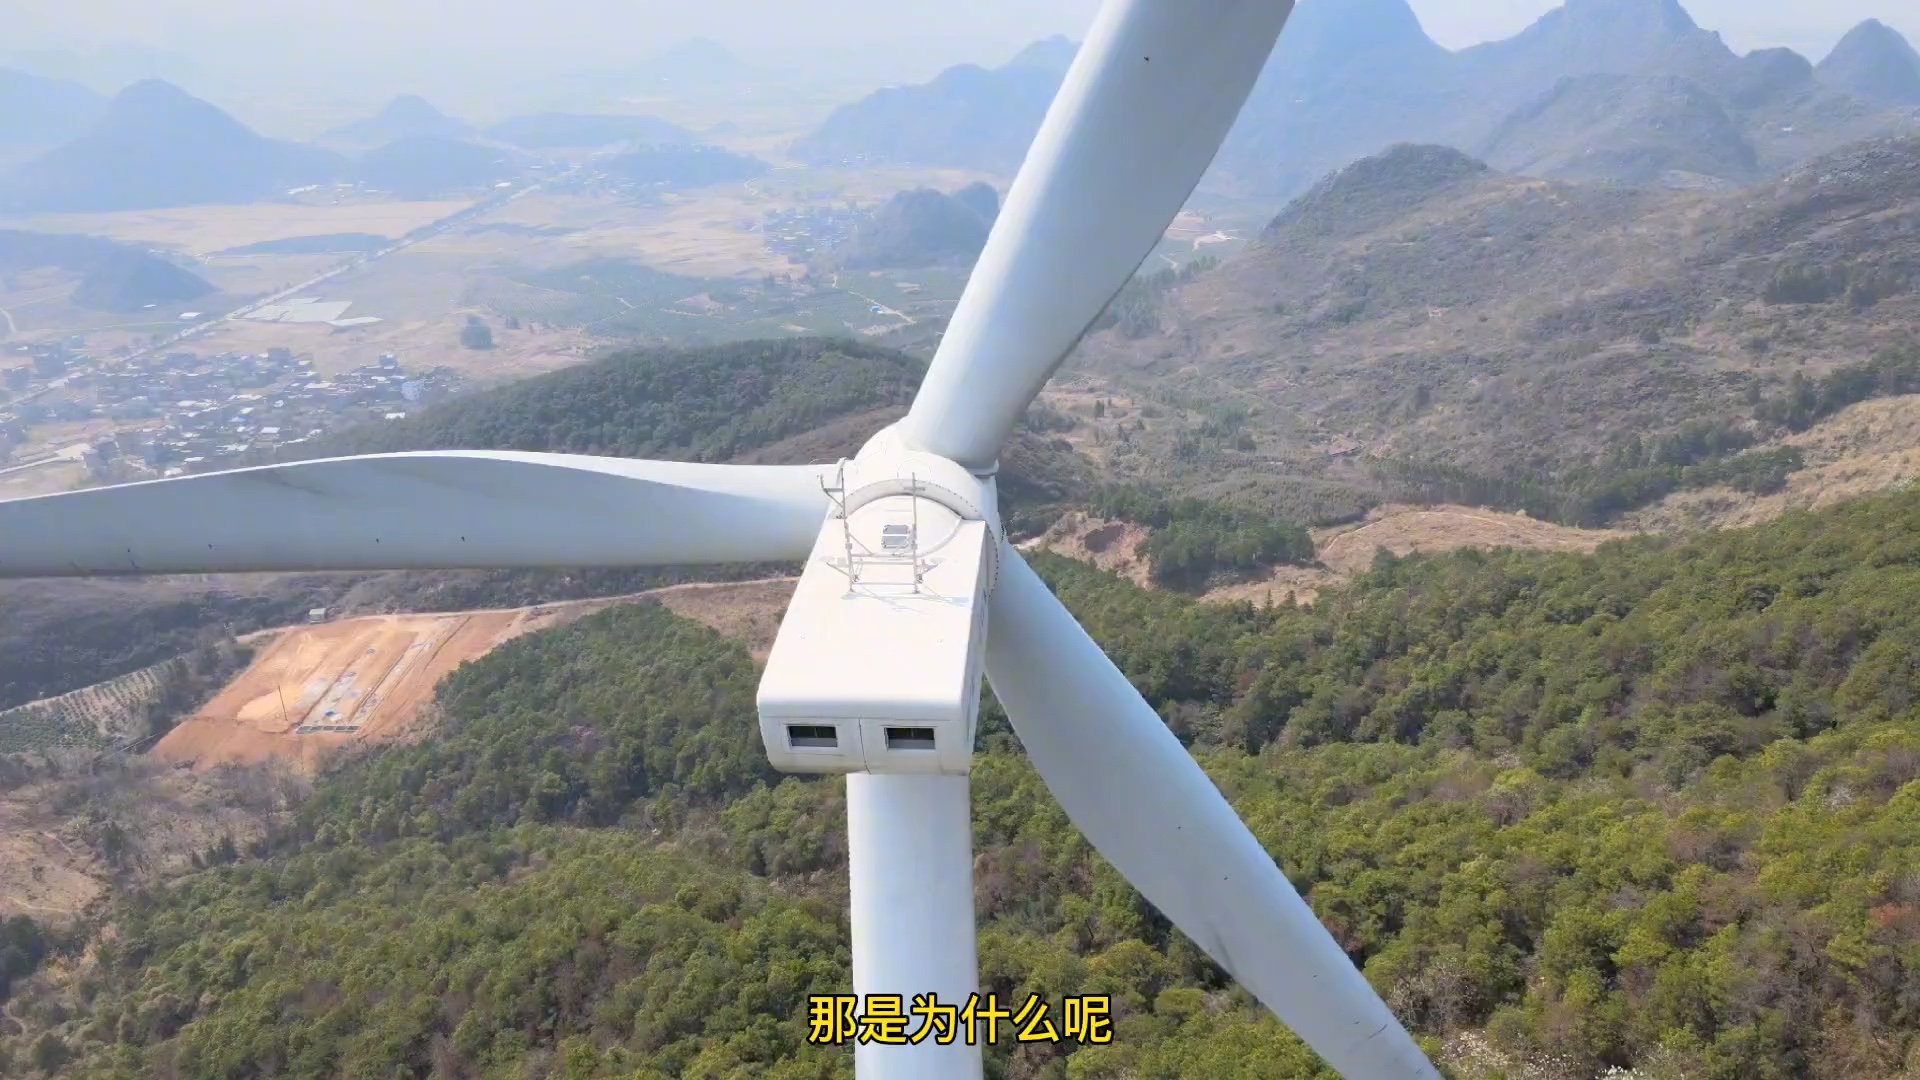 【风力发电】风力发电机有多高？转一圈能发多少电？，今天带大家走进风电场